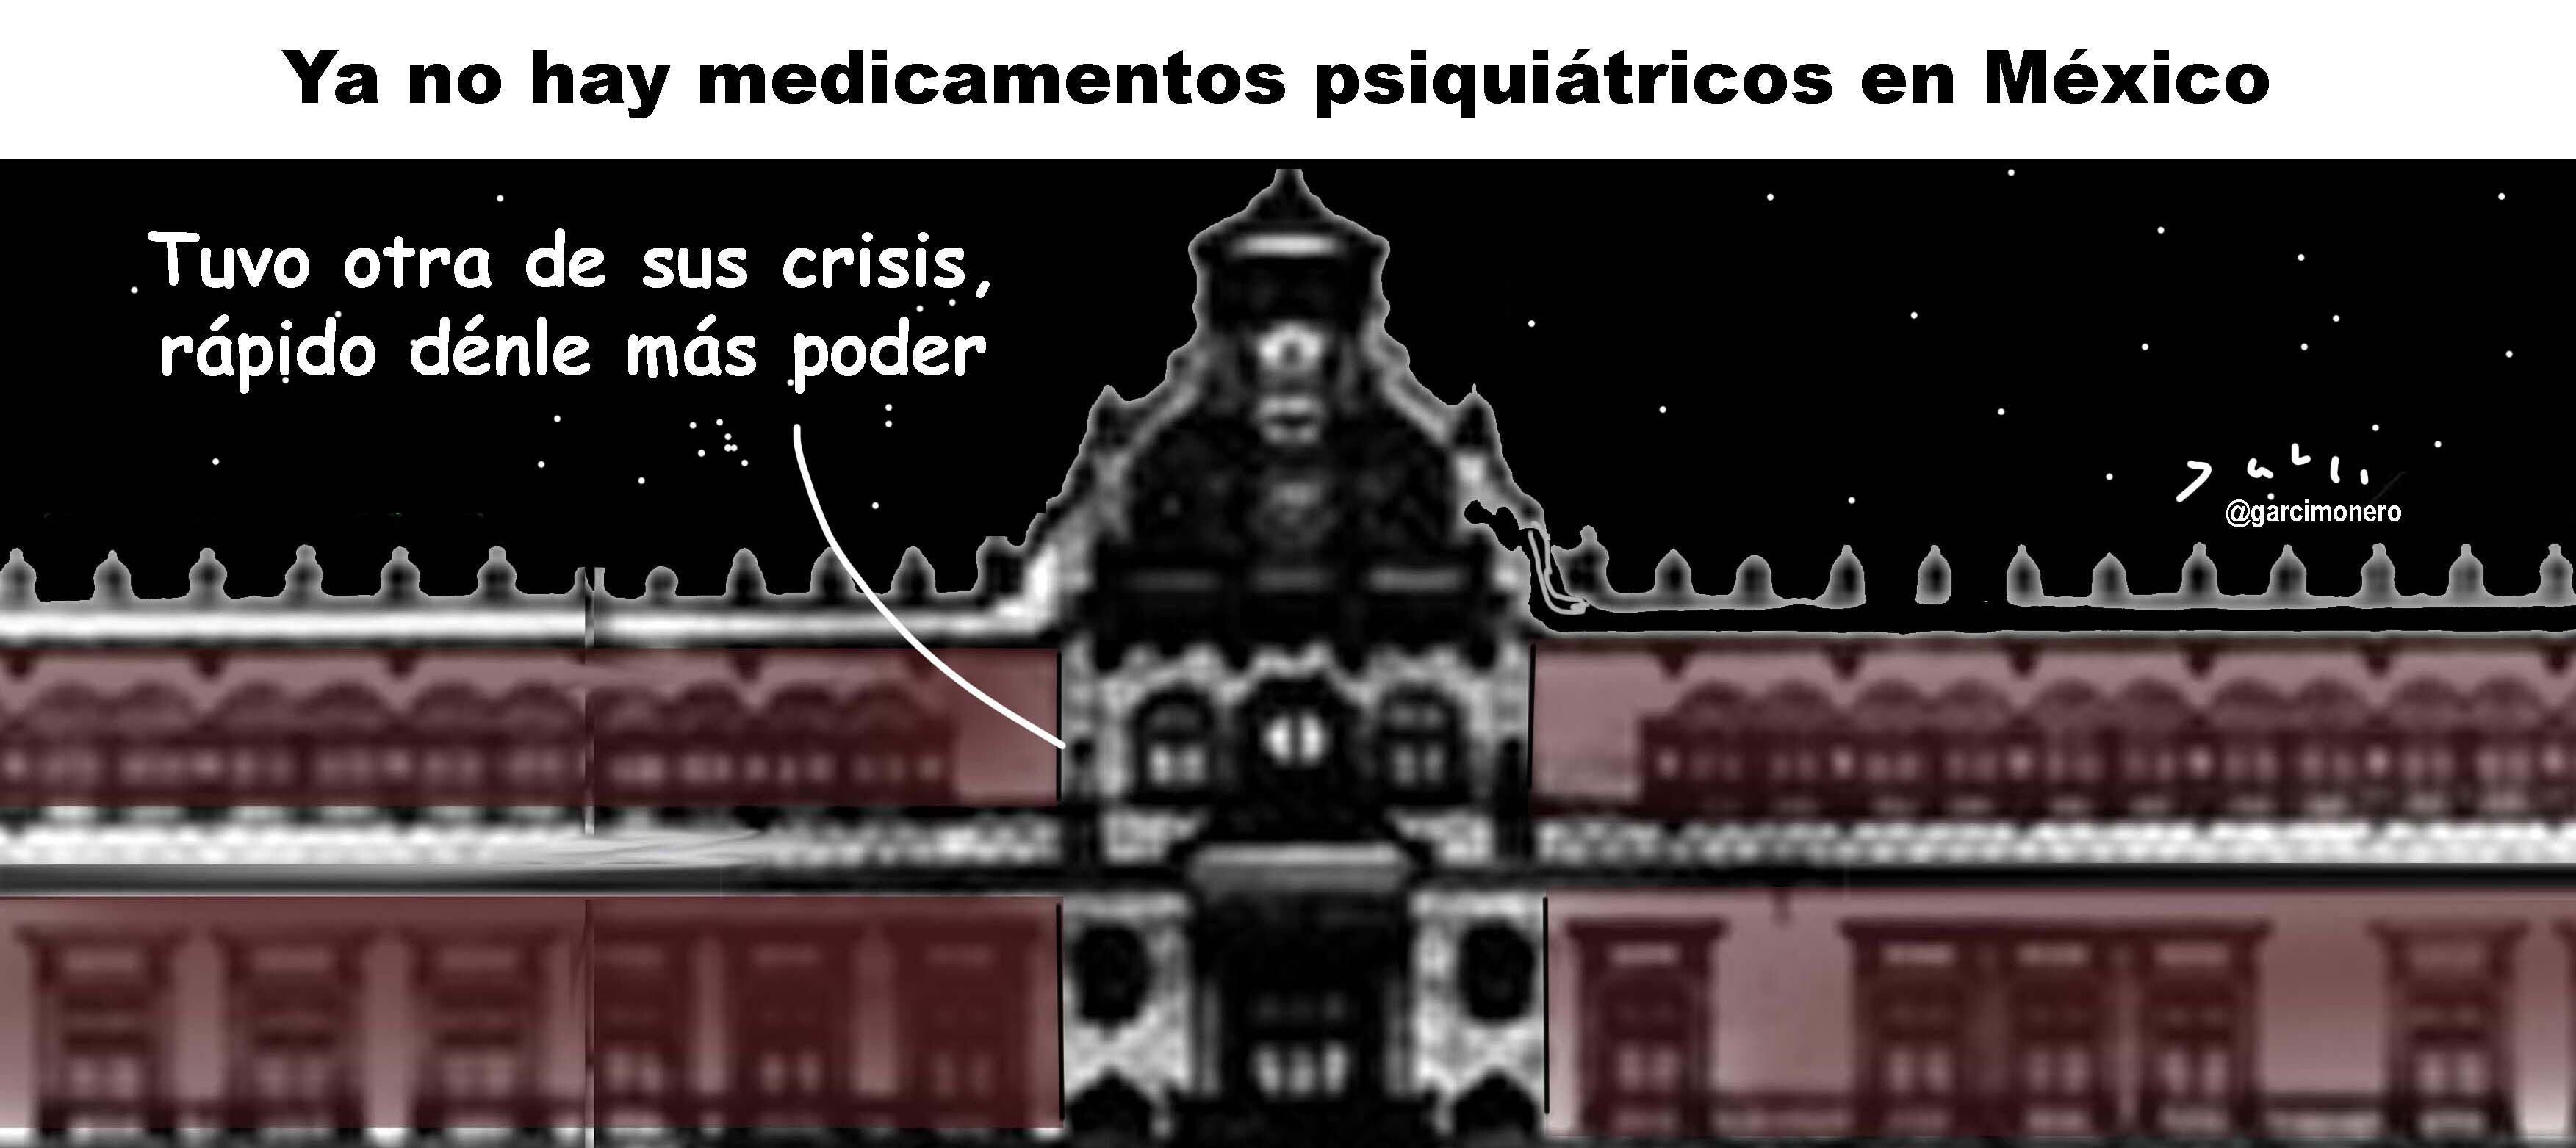 Ya no hay medicamentos psiquiátricos en México